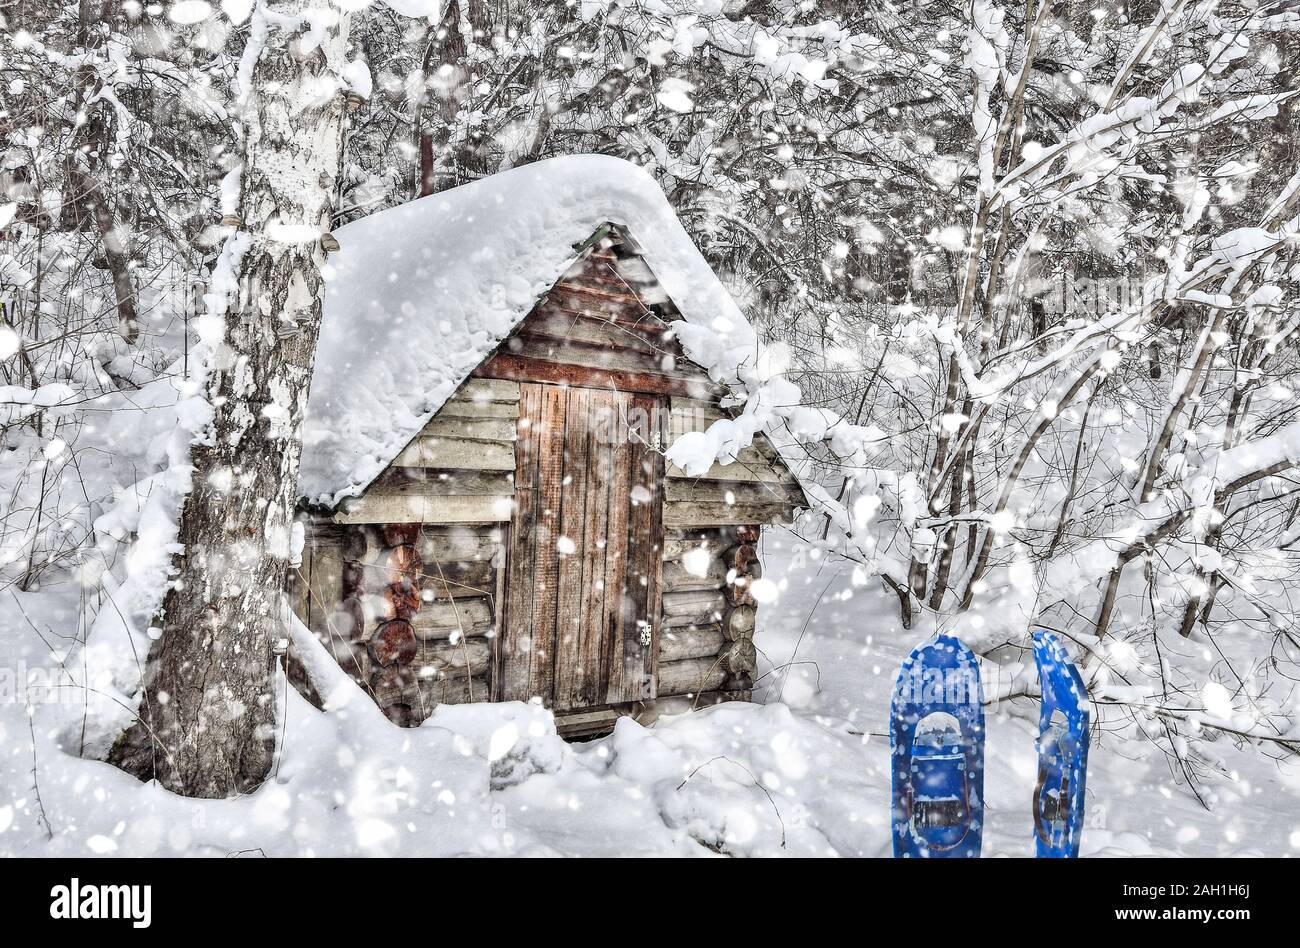 Petite vieille cabane en bois près de Birch Tree in snowy forest hiver sibérien à fortes chutes de neige. La raquette à neige en bleu près de la porte. Conte de Fées Banque D'Images